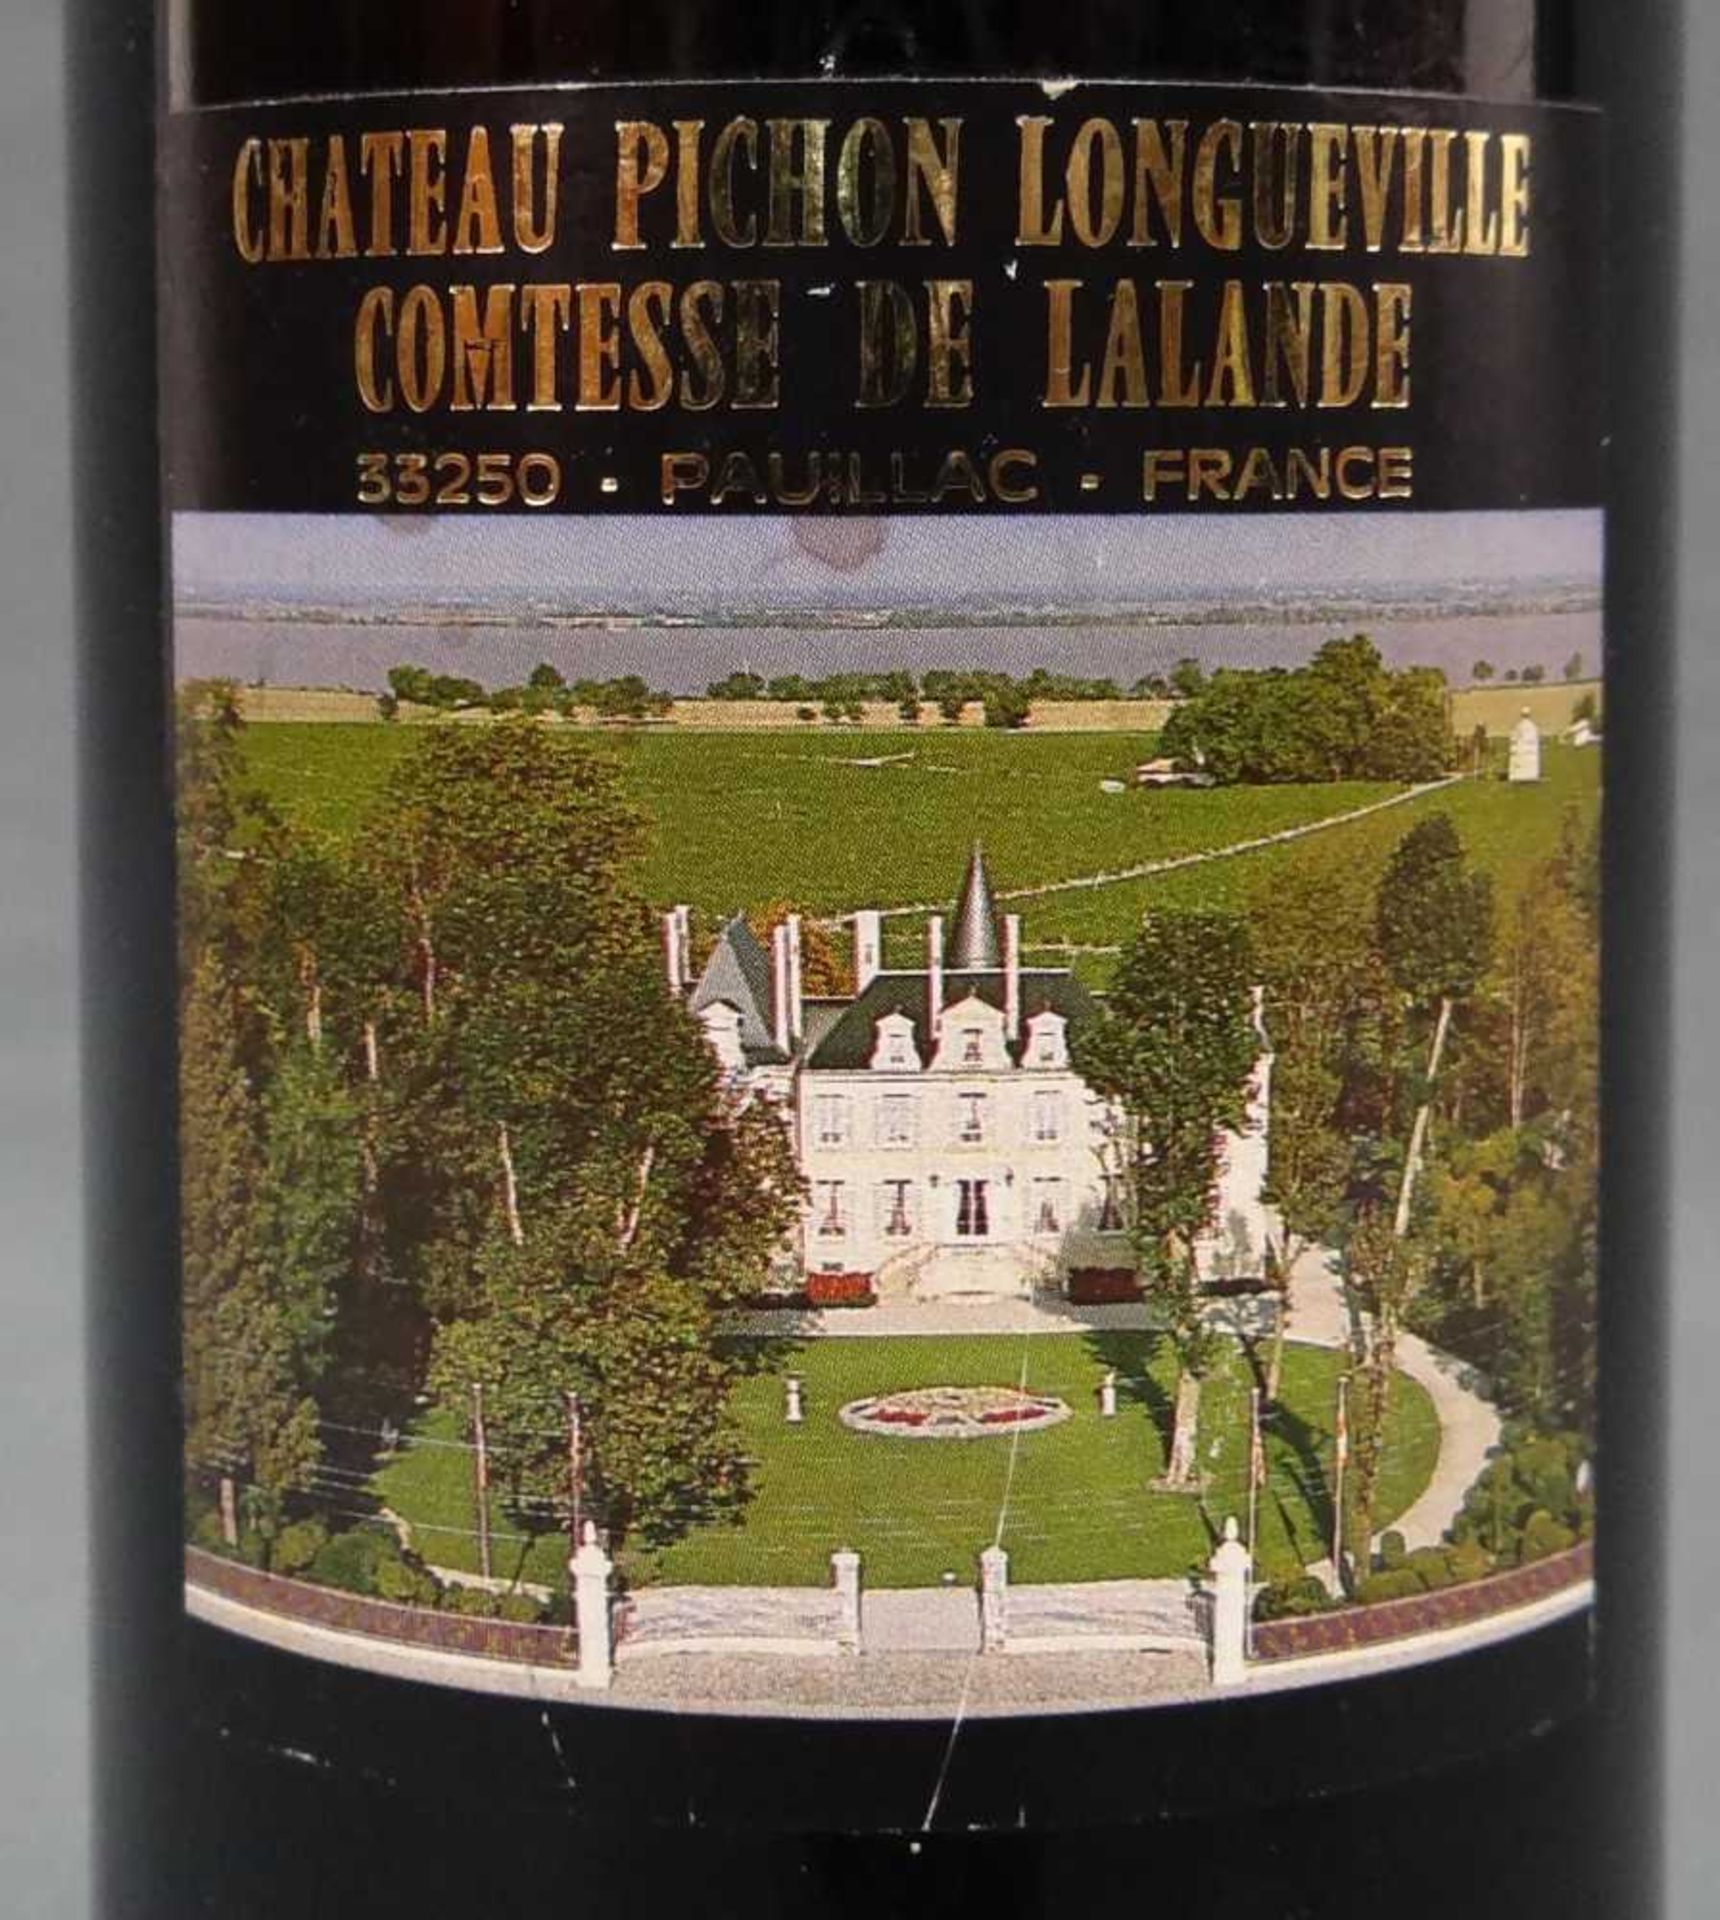 1990 Chateaux Pichon Longueville Comtesse de Lalande, Pauillac. Grand Cru Classé. Dazu 1983 - Image 4 of 4